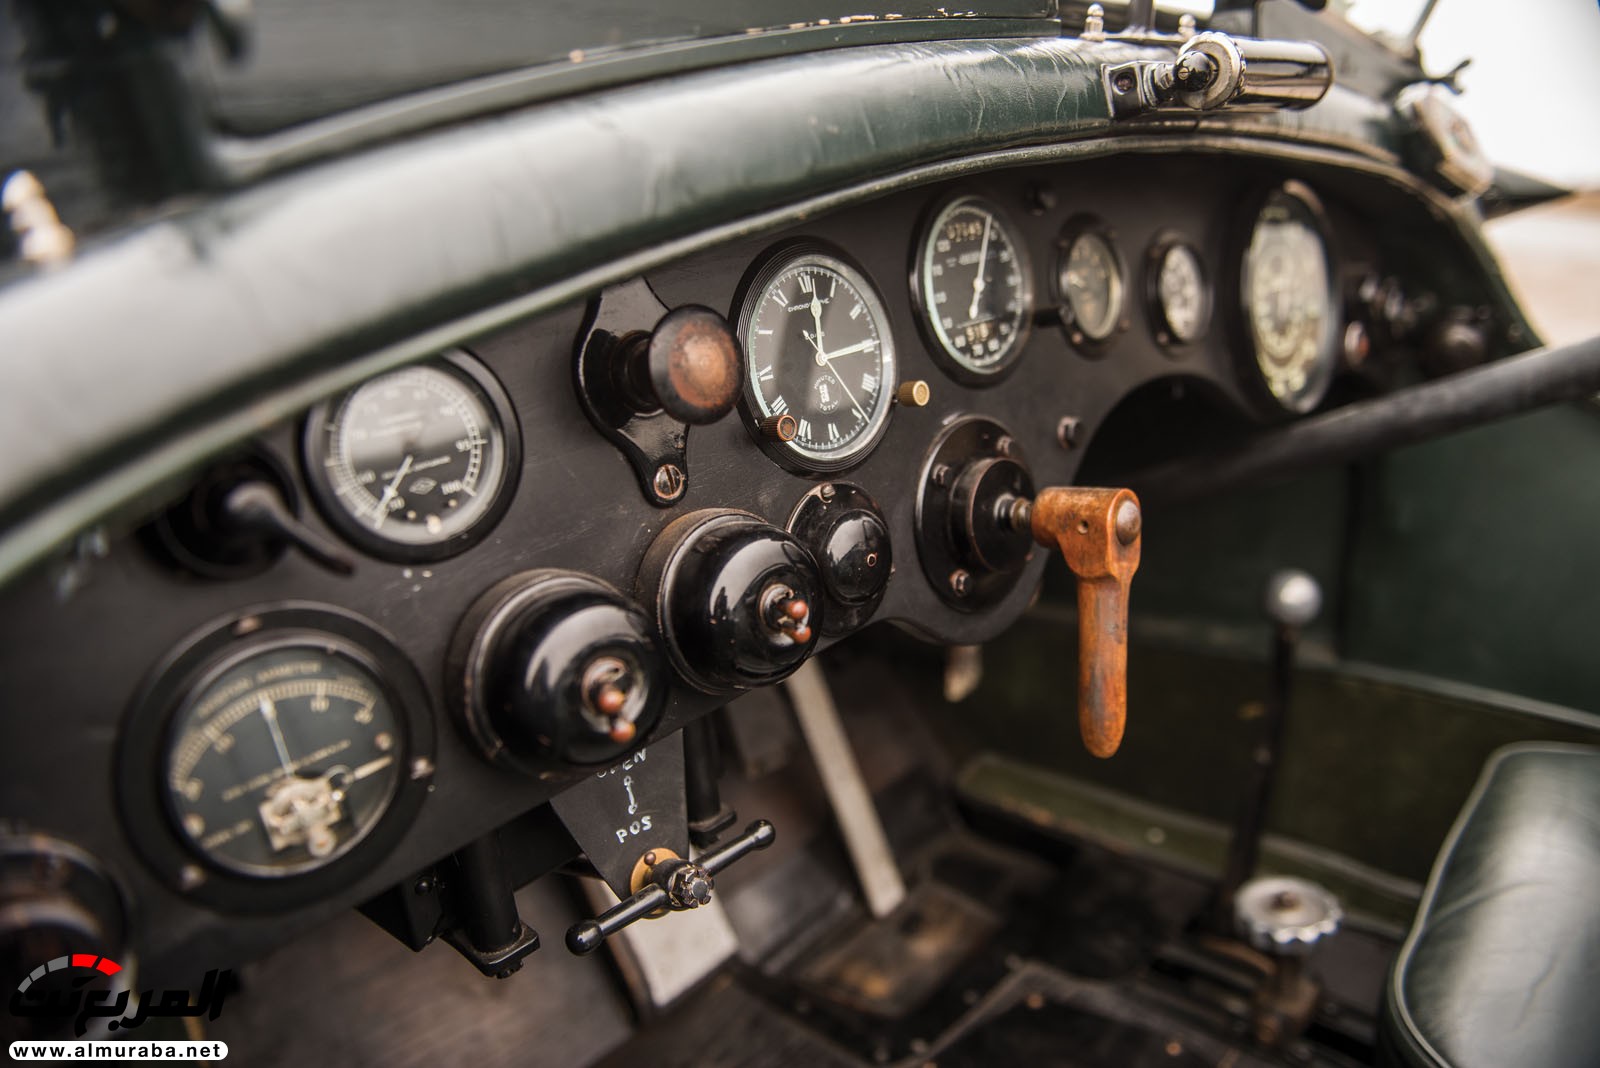 "بالصور" سيارة بنتلي موديل 1928 المشاركة في سباقات لومان تعرض بـ 7 مليون دولار في مزاد علني 27